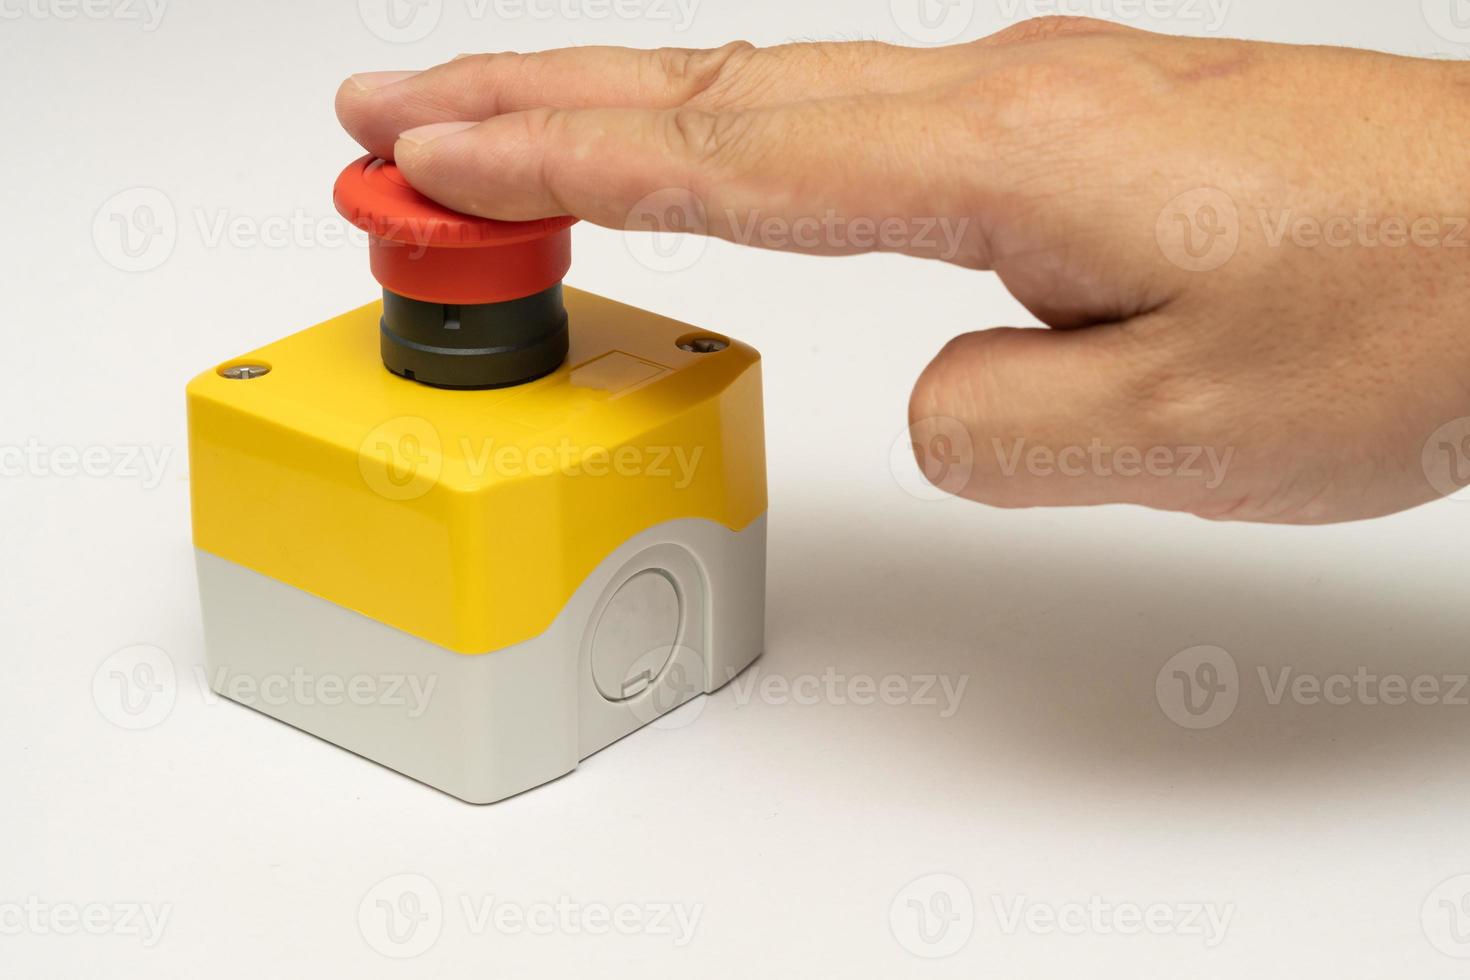 detener el botón rojo y la mano del trabajador a punto de presionarlo. botón de parada de emergencia. gran botón rojo de emergencia o botón de parada para presionar manualmente. foto